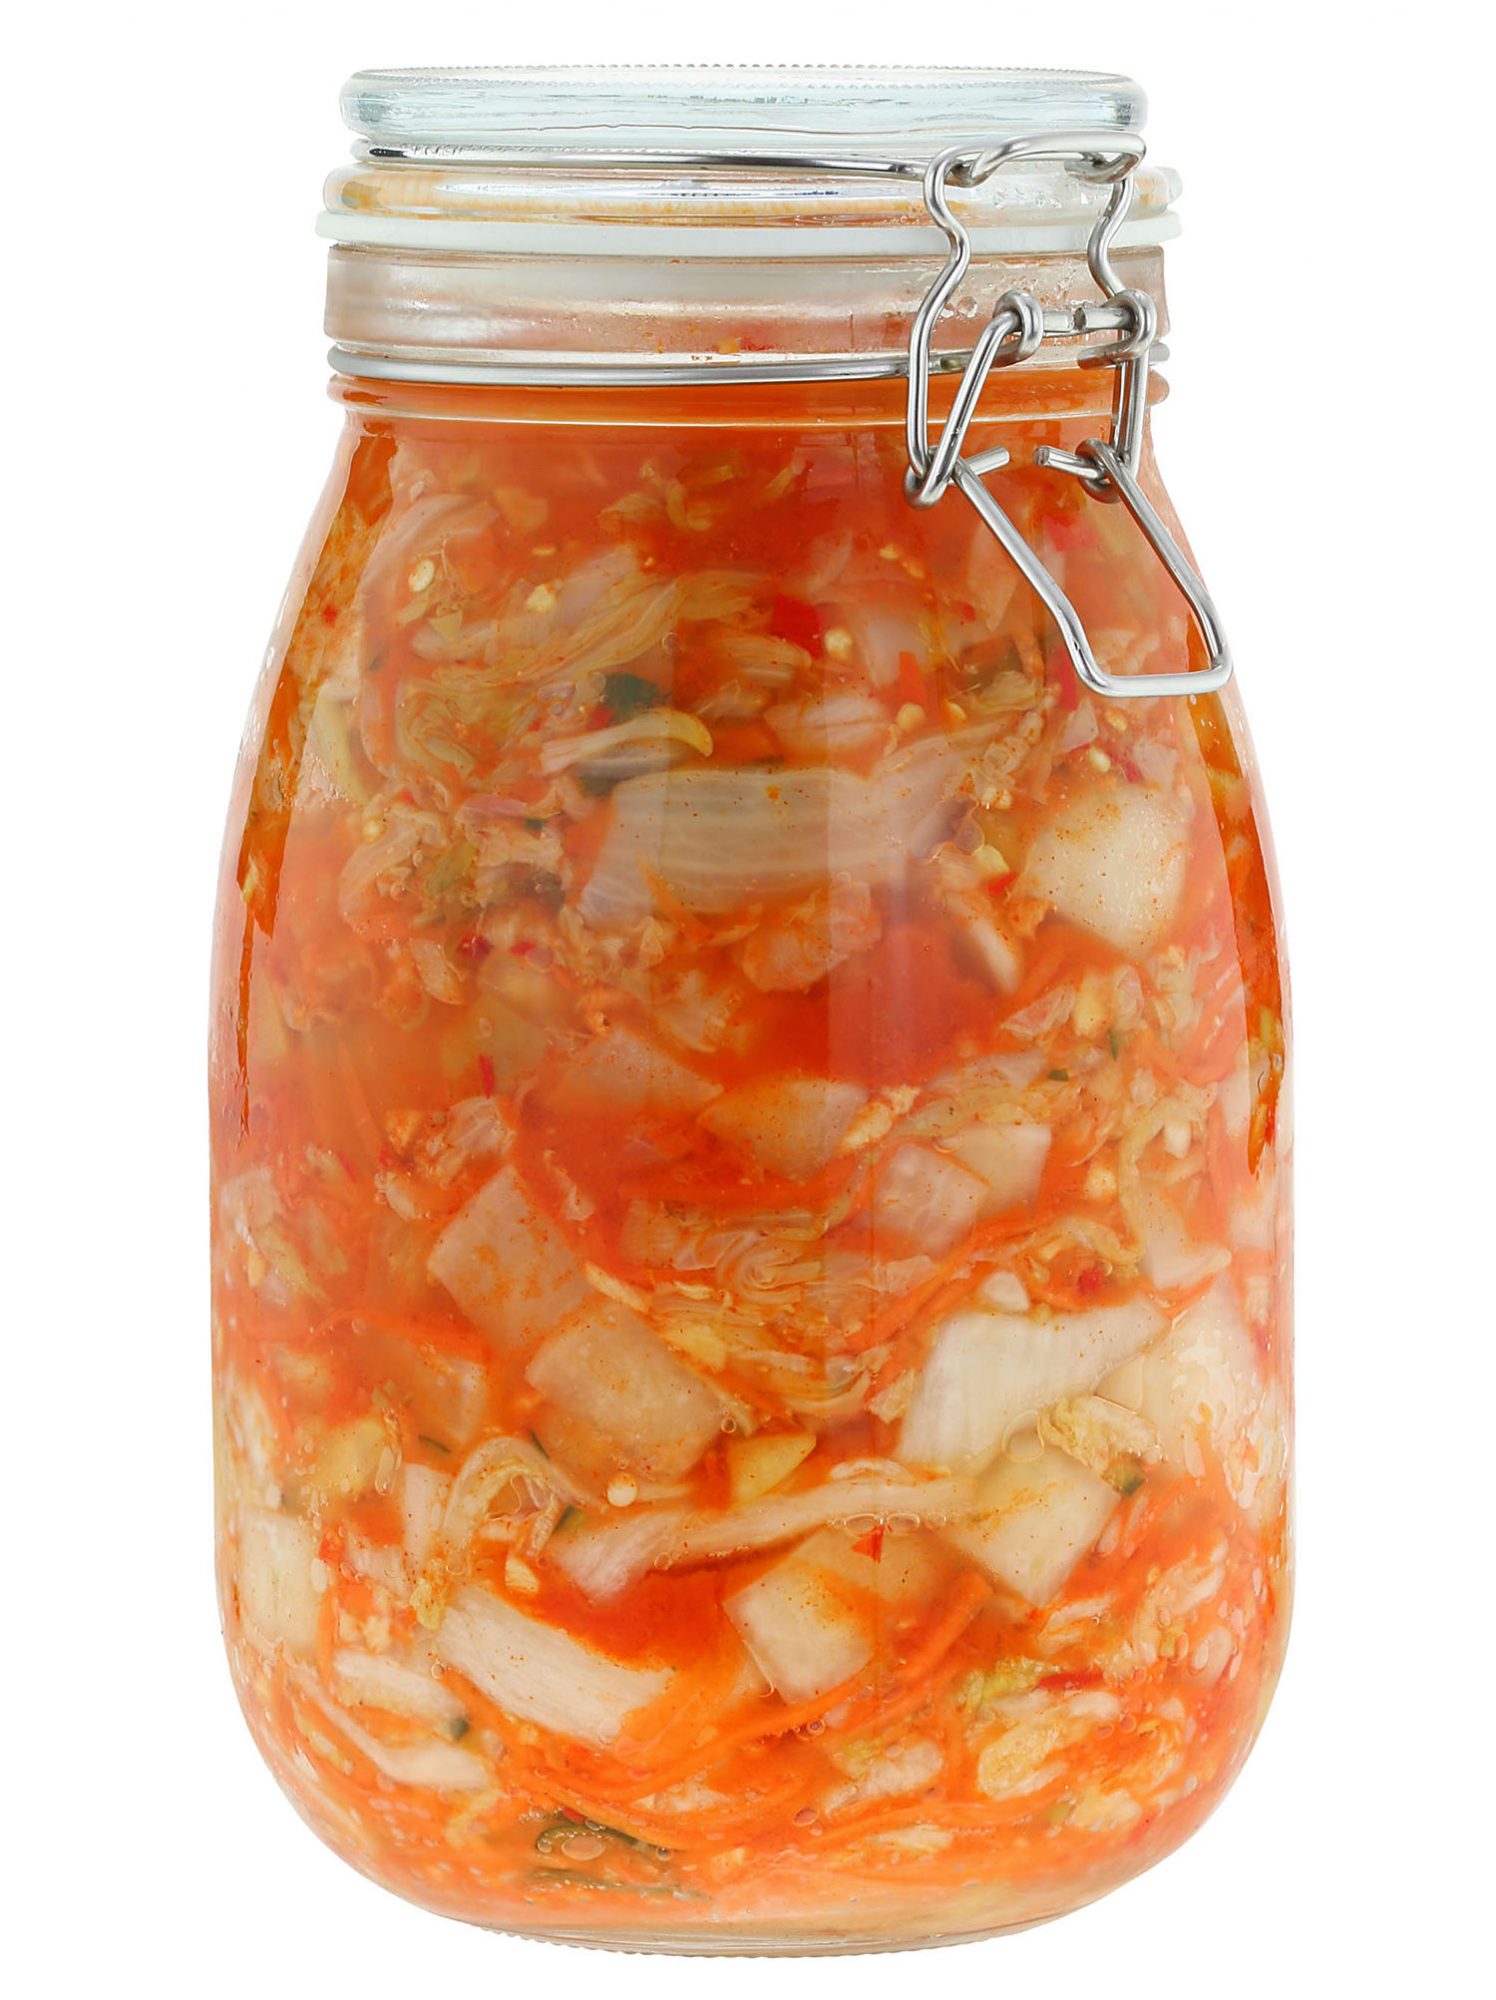 glass jar of homemade hot sauce